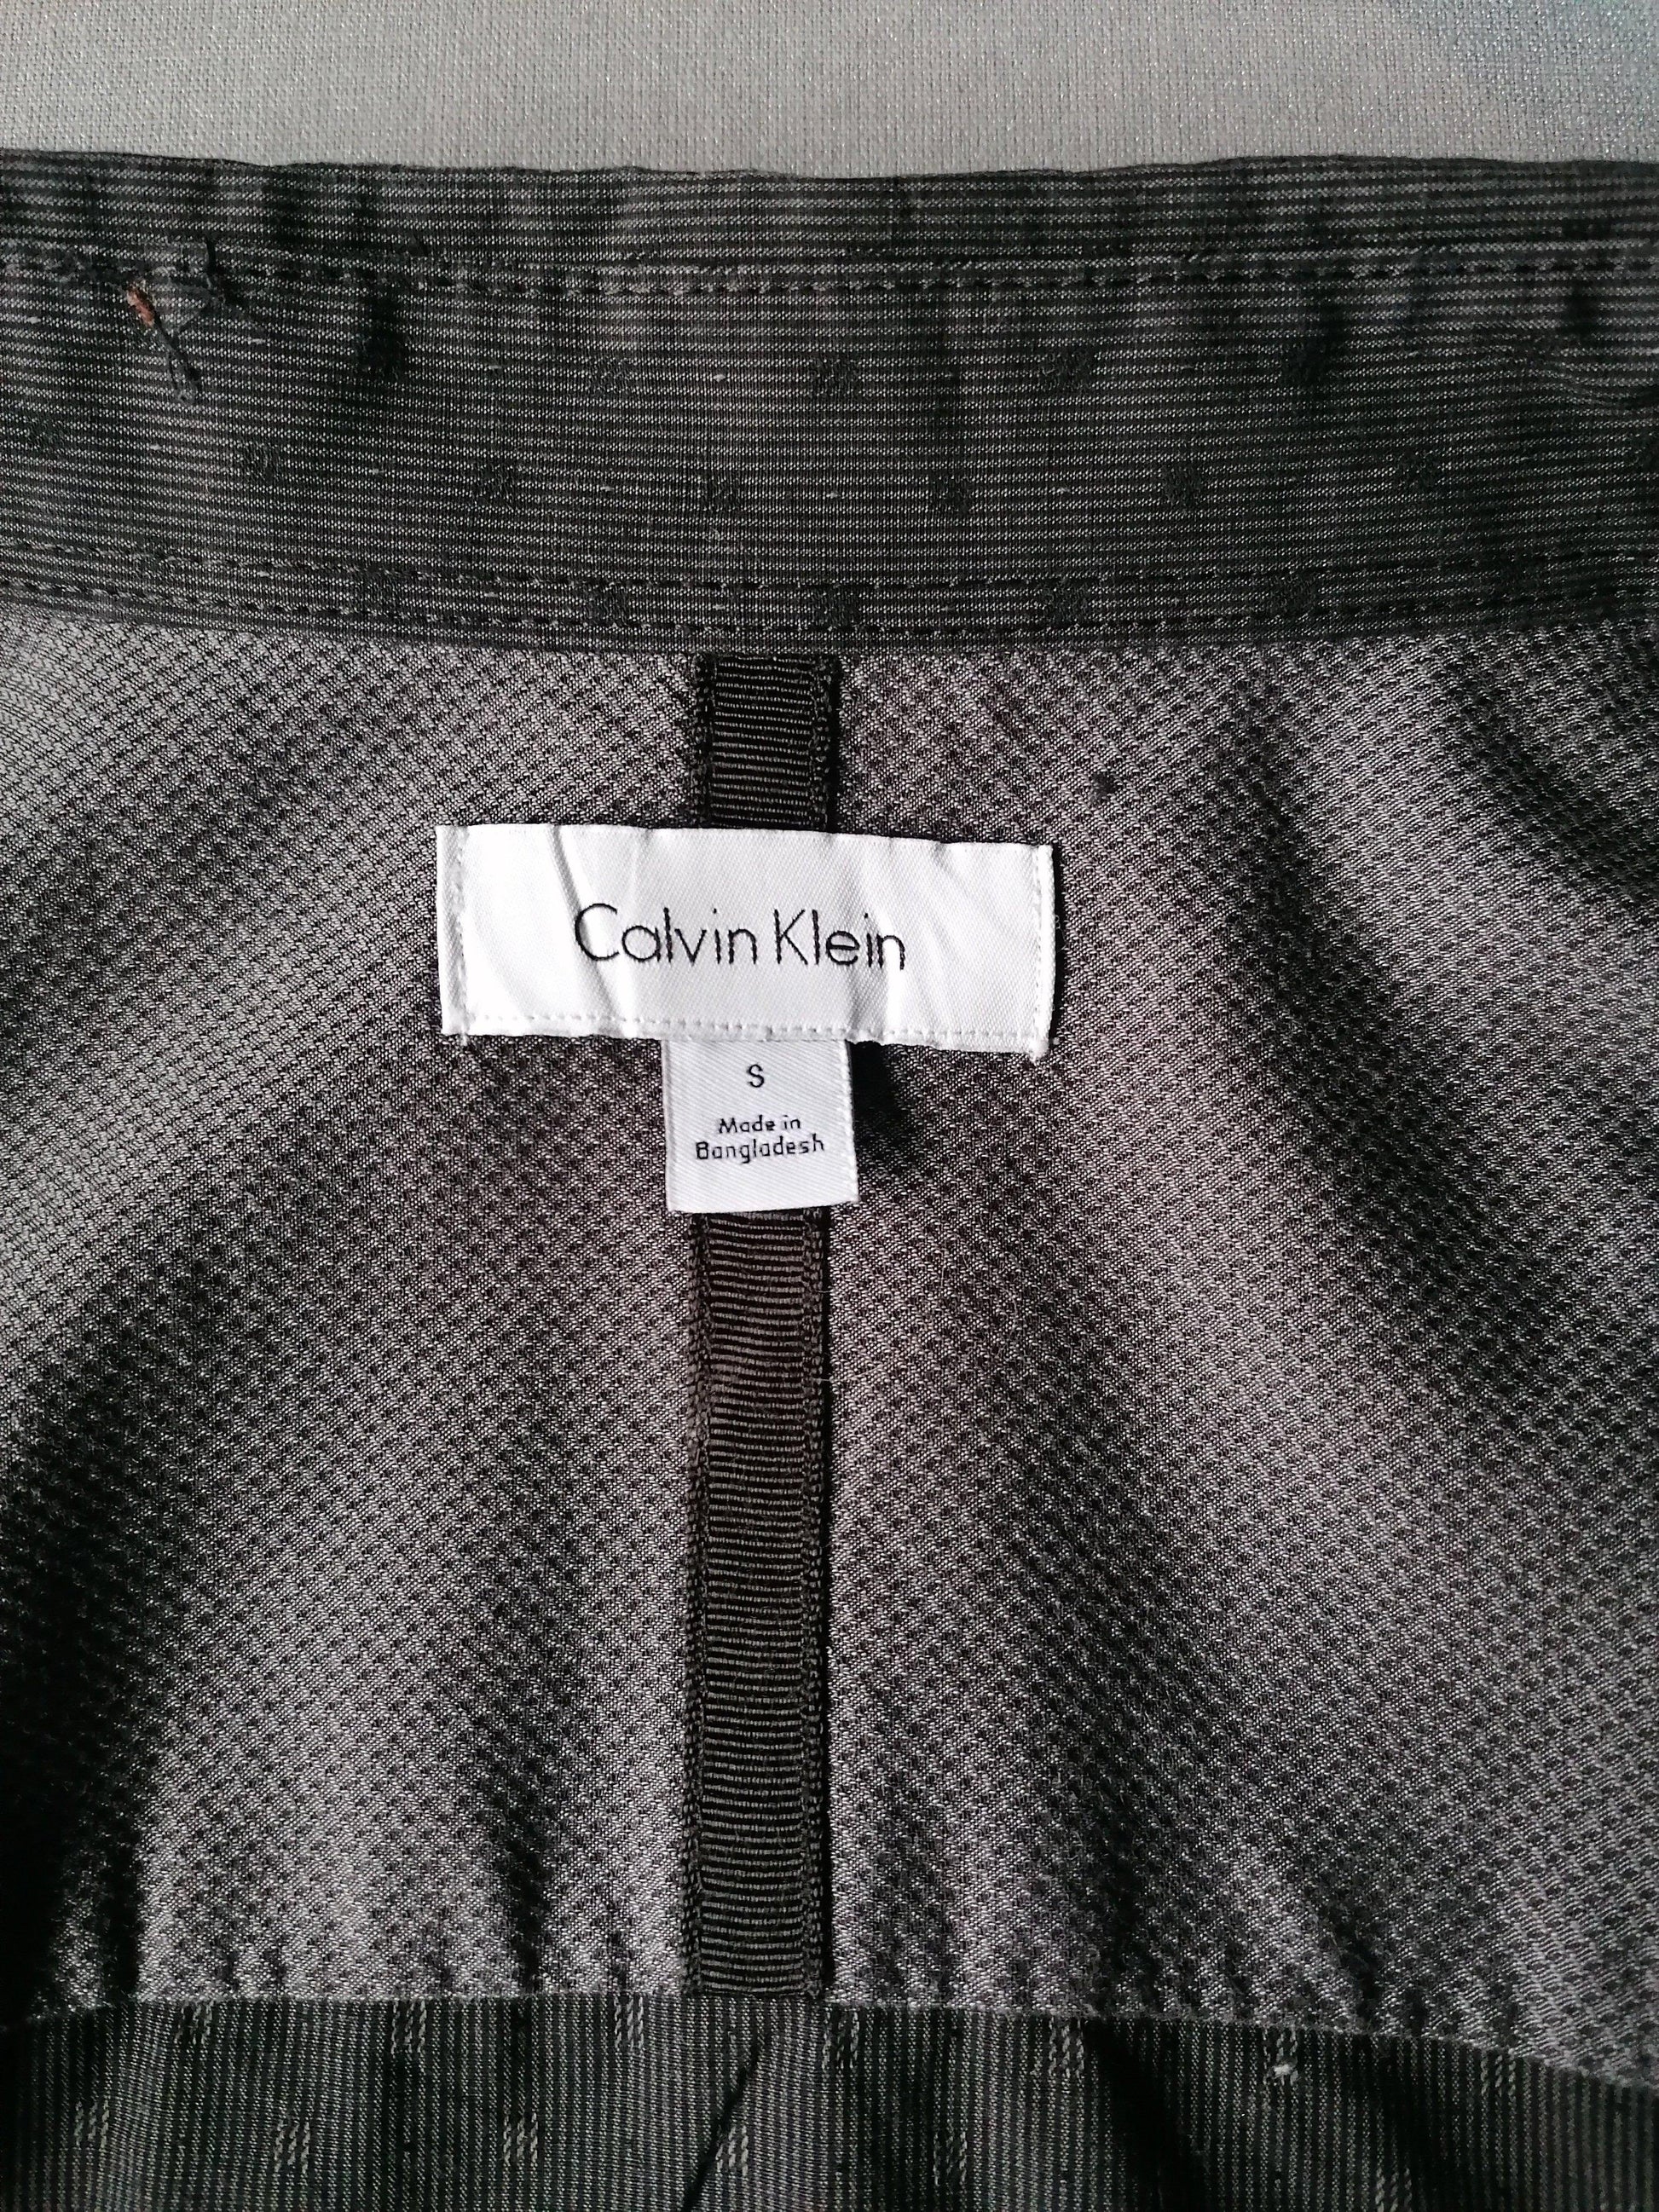 Calvin Klein overhemd. Grijs Zwart motief. Maat S. - EcoGents